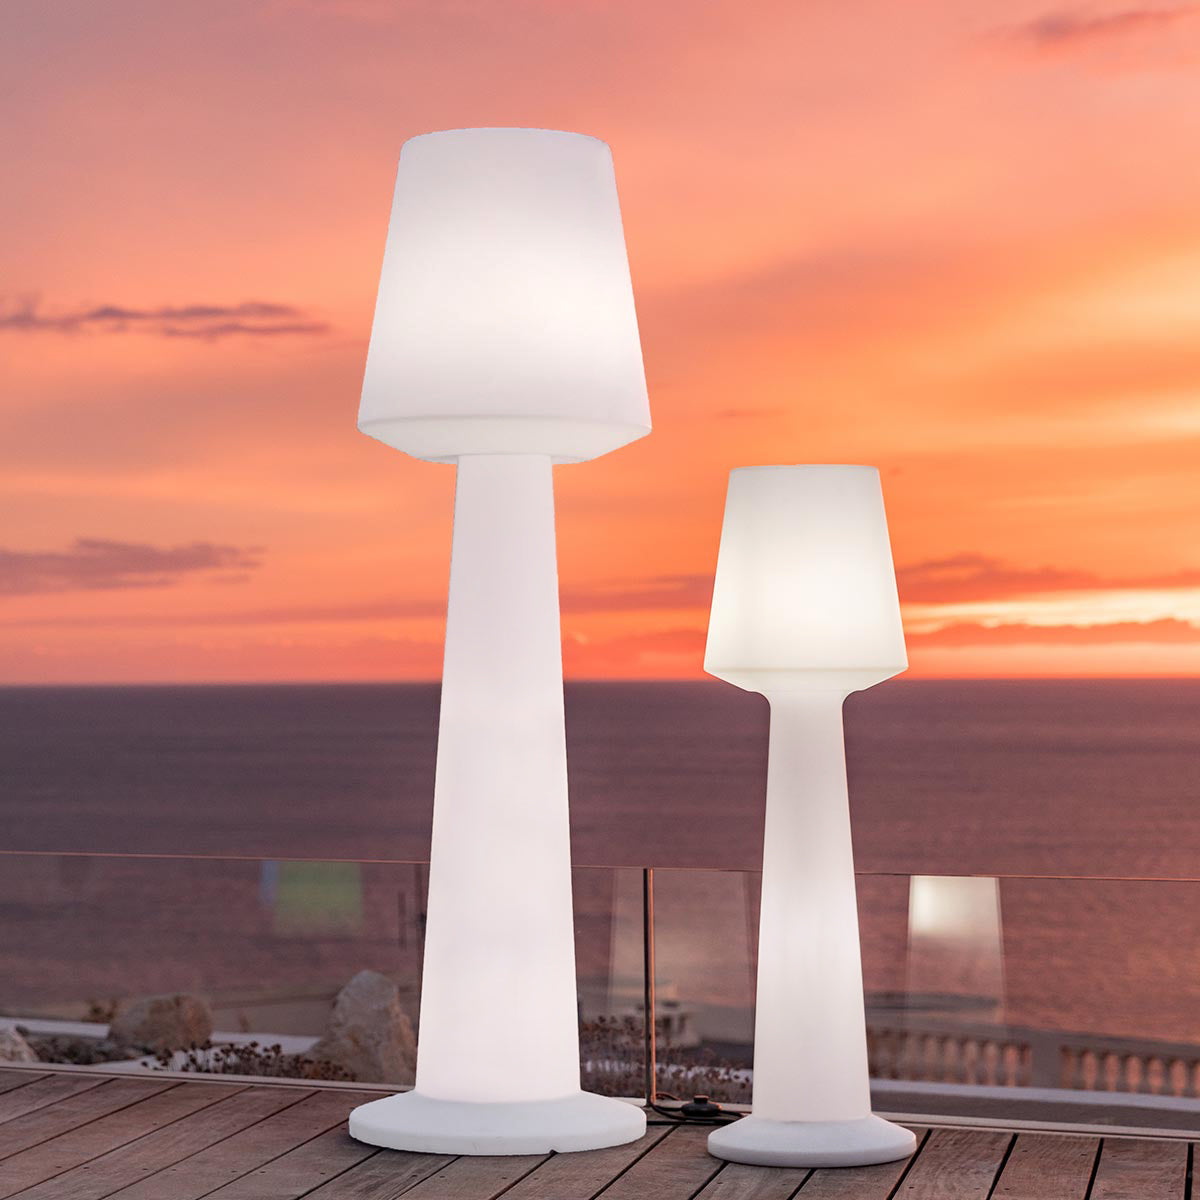 Lampadaire design lumineux filaire pour extérieur éclairage puissant LED blanc AUSTRAL H170cm culot E27